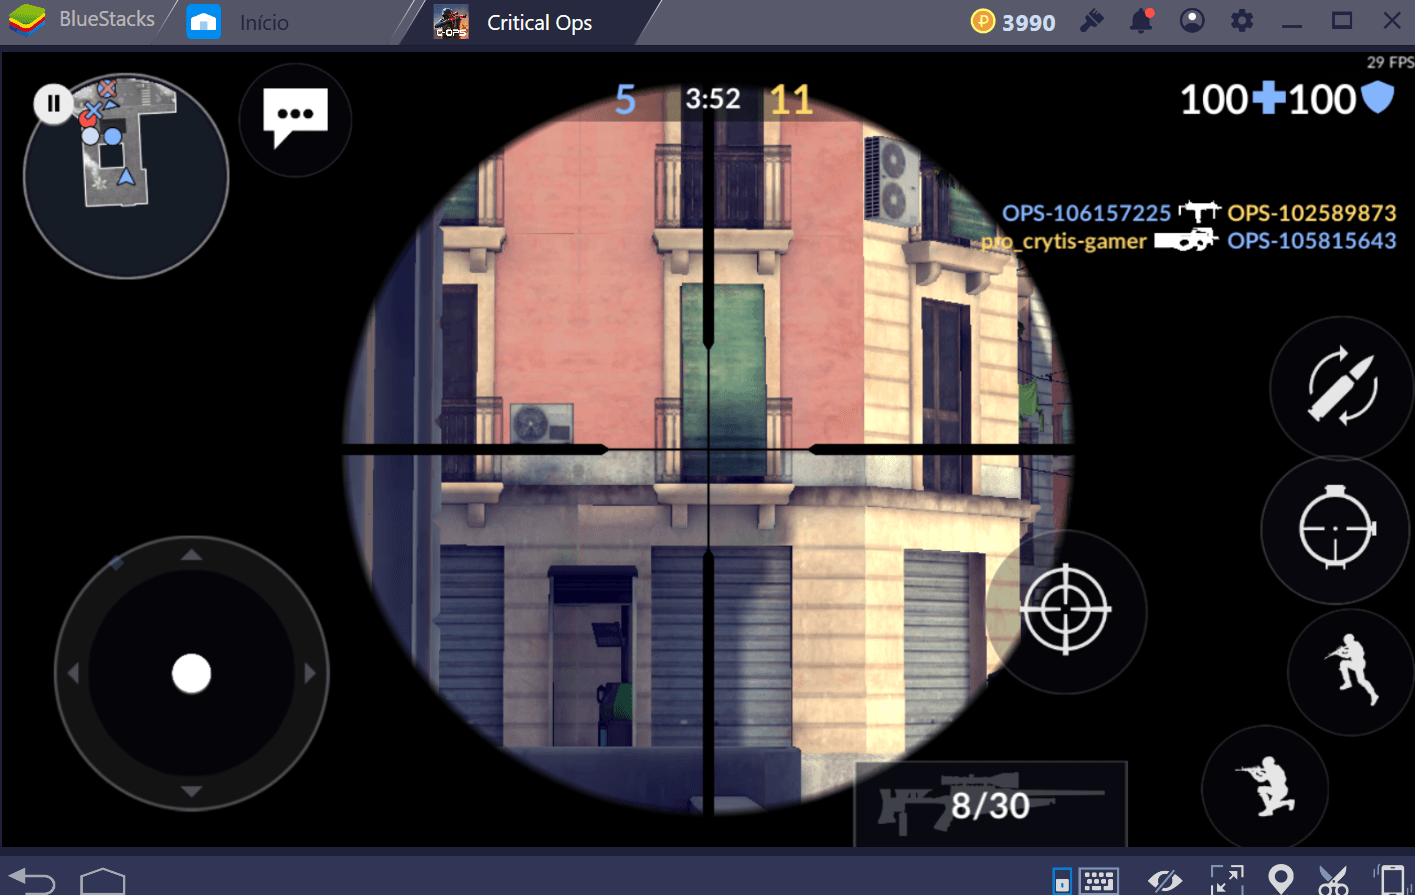 Adaptei uma sniper em um controle de videogame, mira giroscópica é outro  nível : r/gamesEcultura